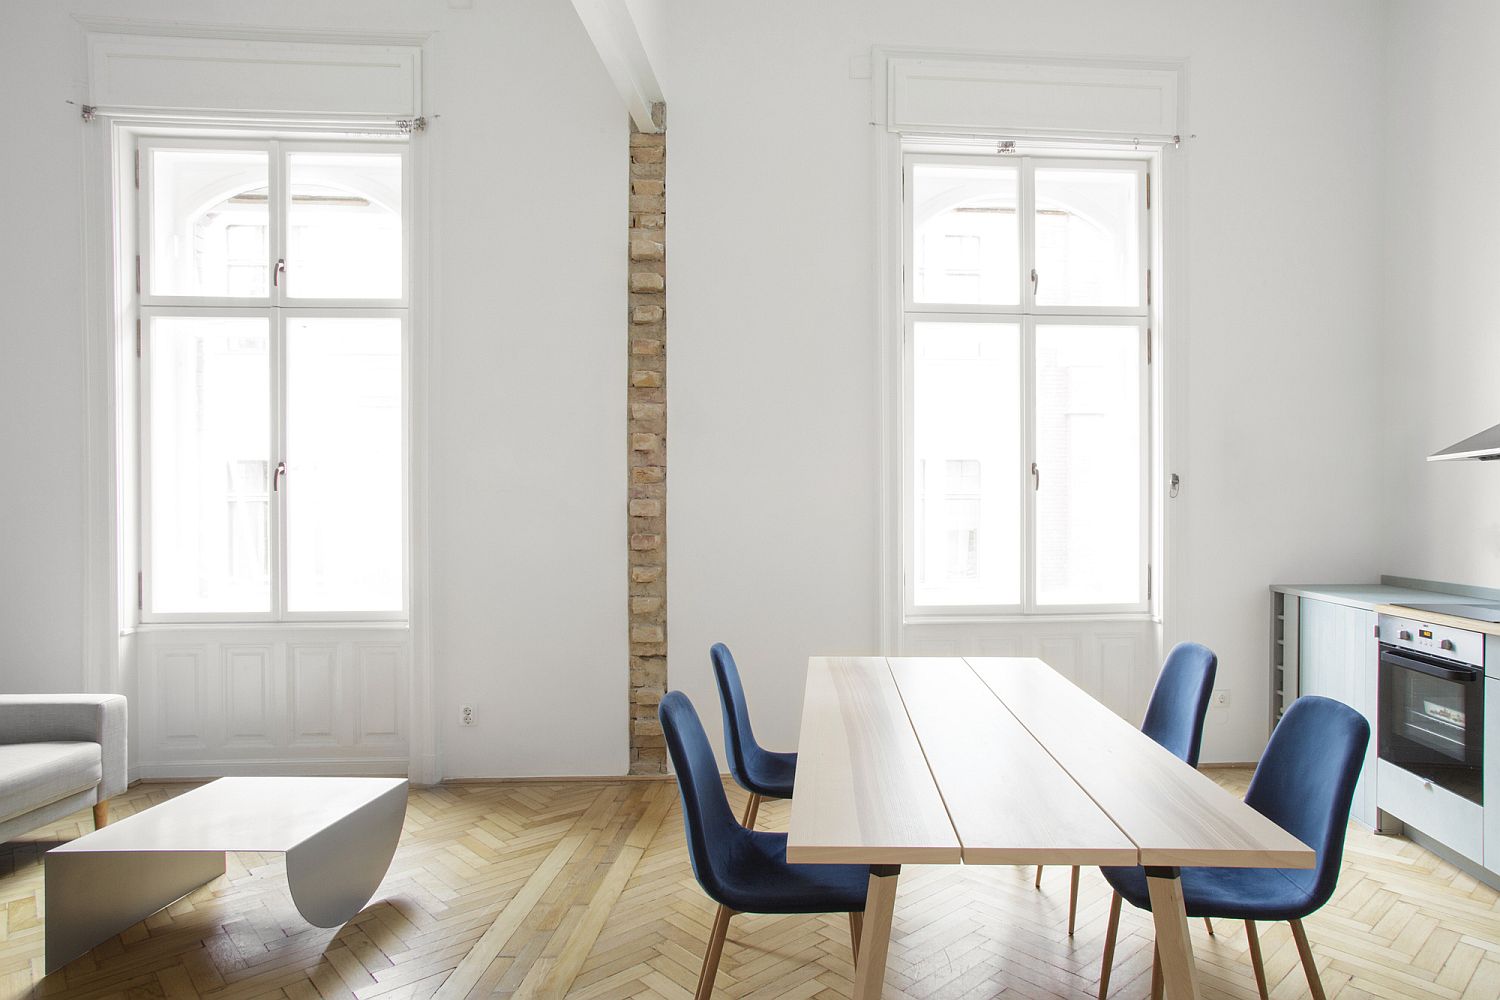 Phòng bếp nổi bật với những chiếc ghế ăn bọc nệm màu xanh dương đậm trở thành điểm nhấn màu sắc nổi bật trong căn hộ có gác lửng.